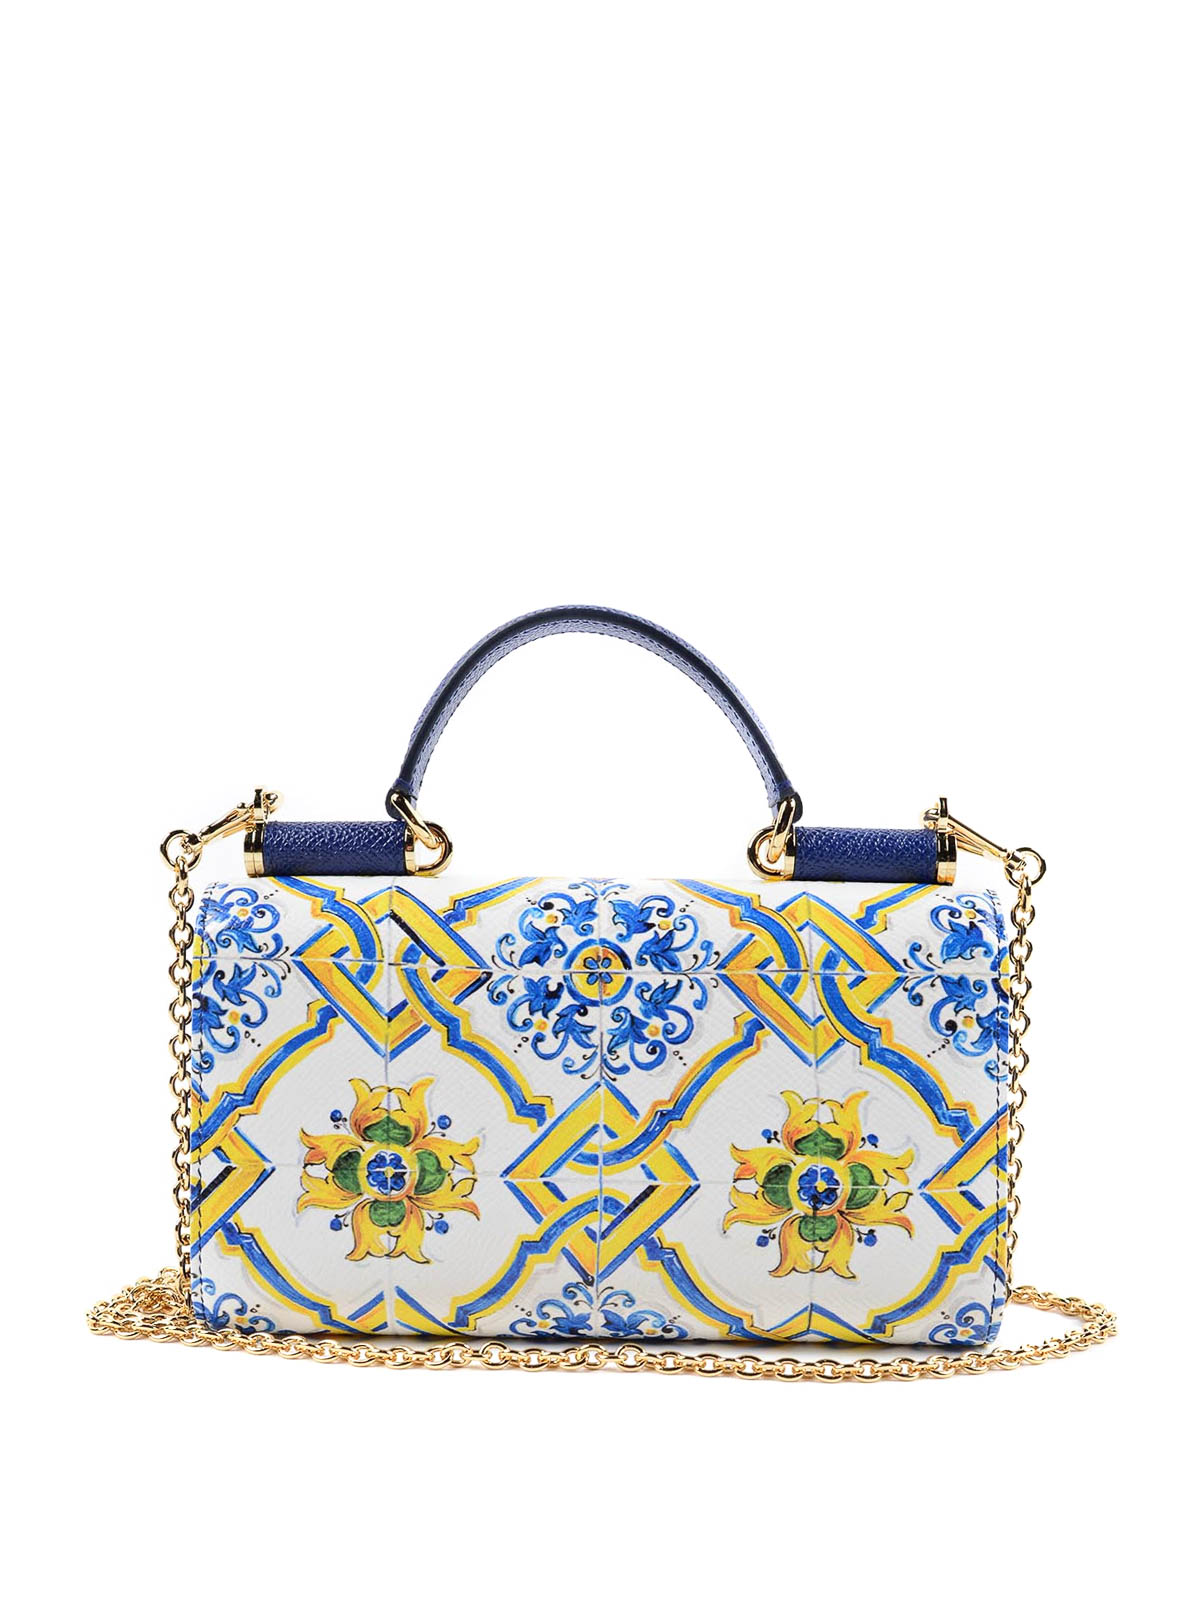 Wallets & purses Dolce & Gabbana - Carretto Siciliano cross body 